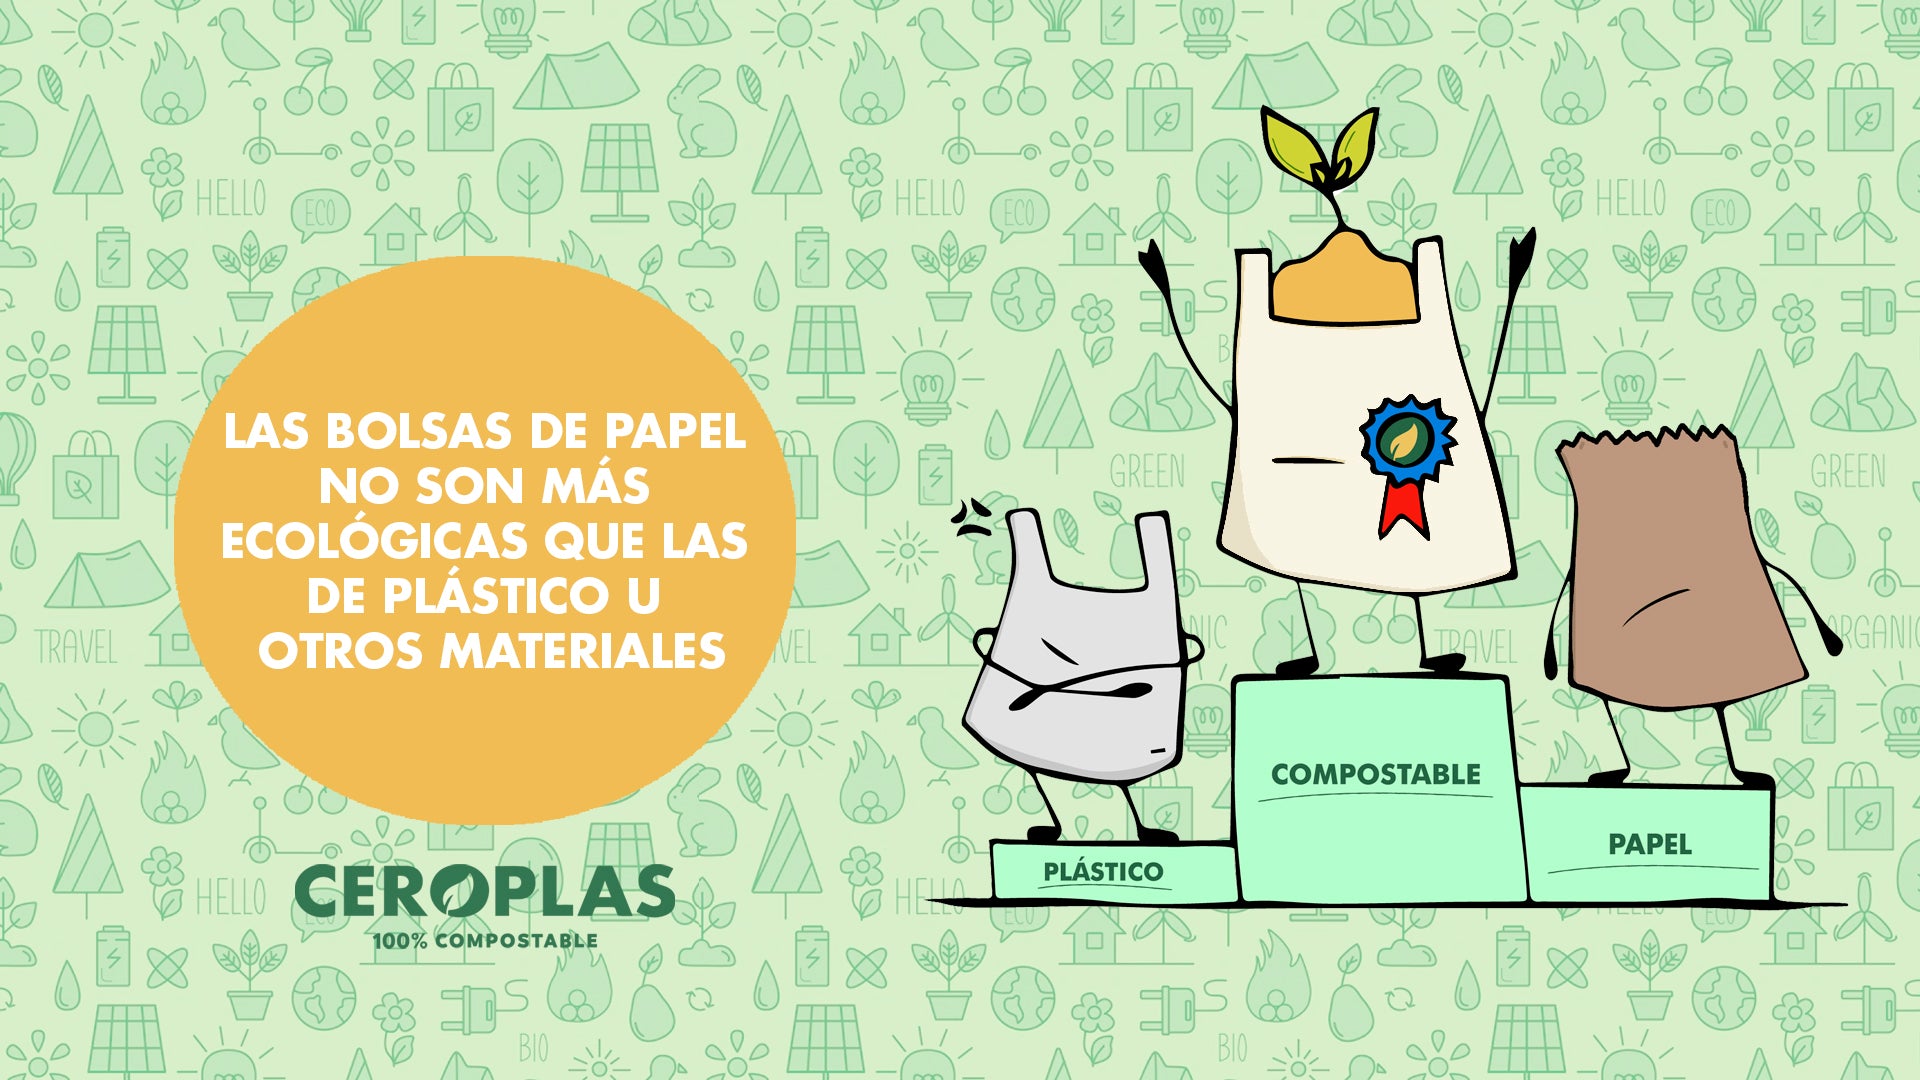 Las bolsas de papel no son más ecológicas que las de plástico u otros materiales.